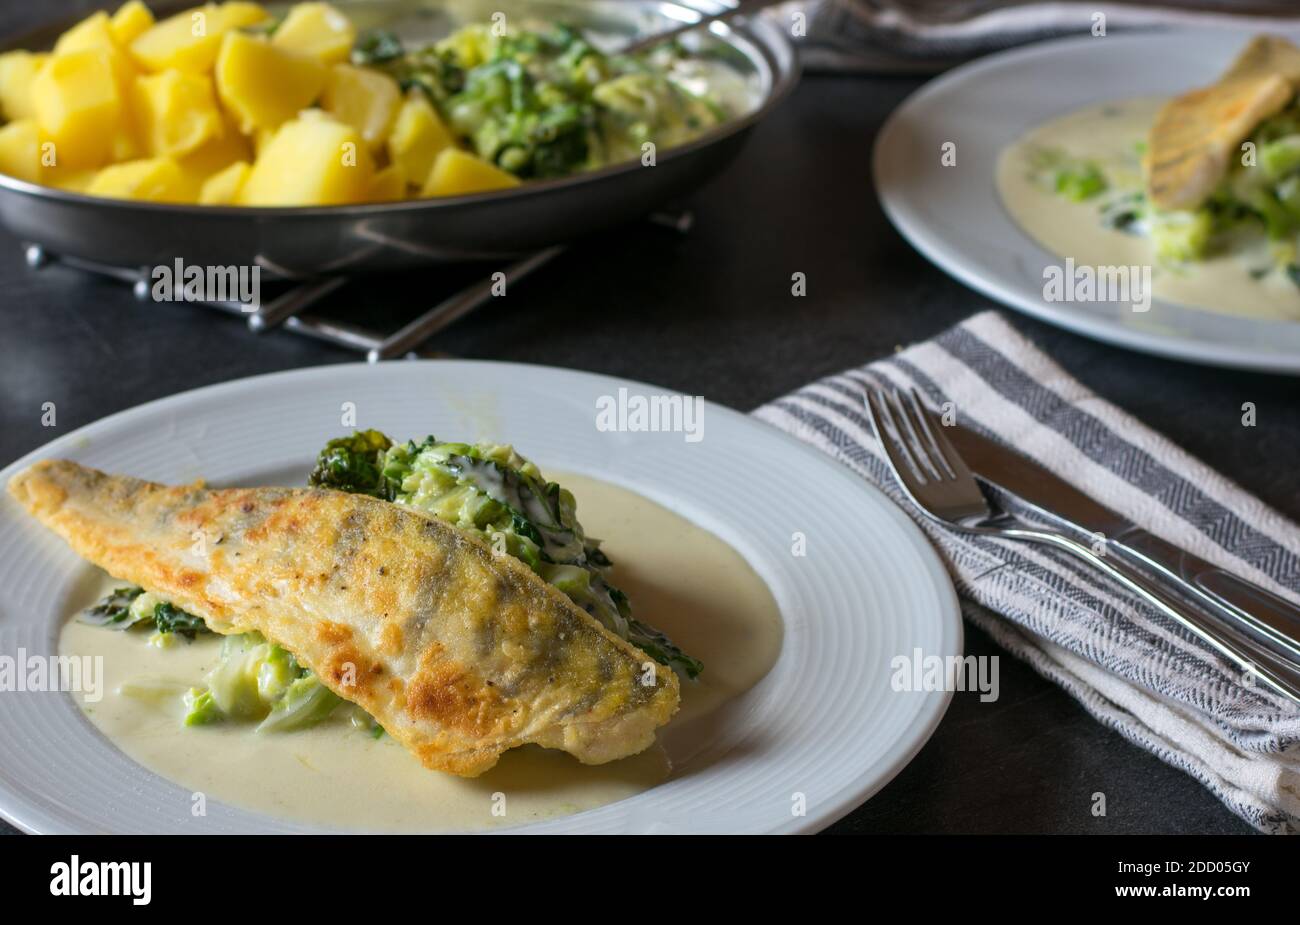 Köstliches Fischgericht mit Hechtbarsch-Filet, savoy-Gemüse, Kartoffeln in einer cremigen Beachamel-Sauce serviert auf einem Küchentisch zu Hause Stockfoto